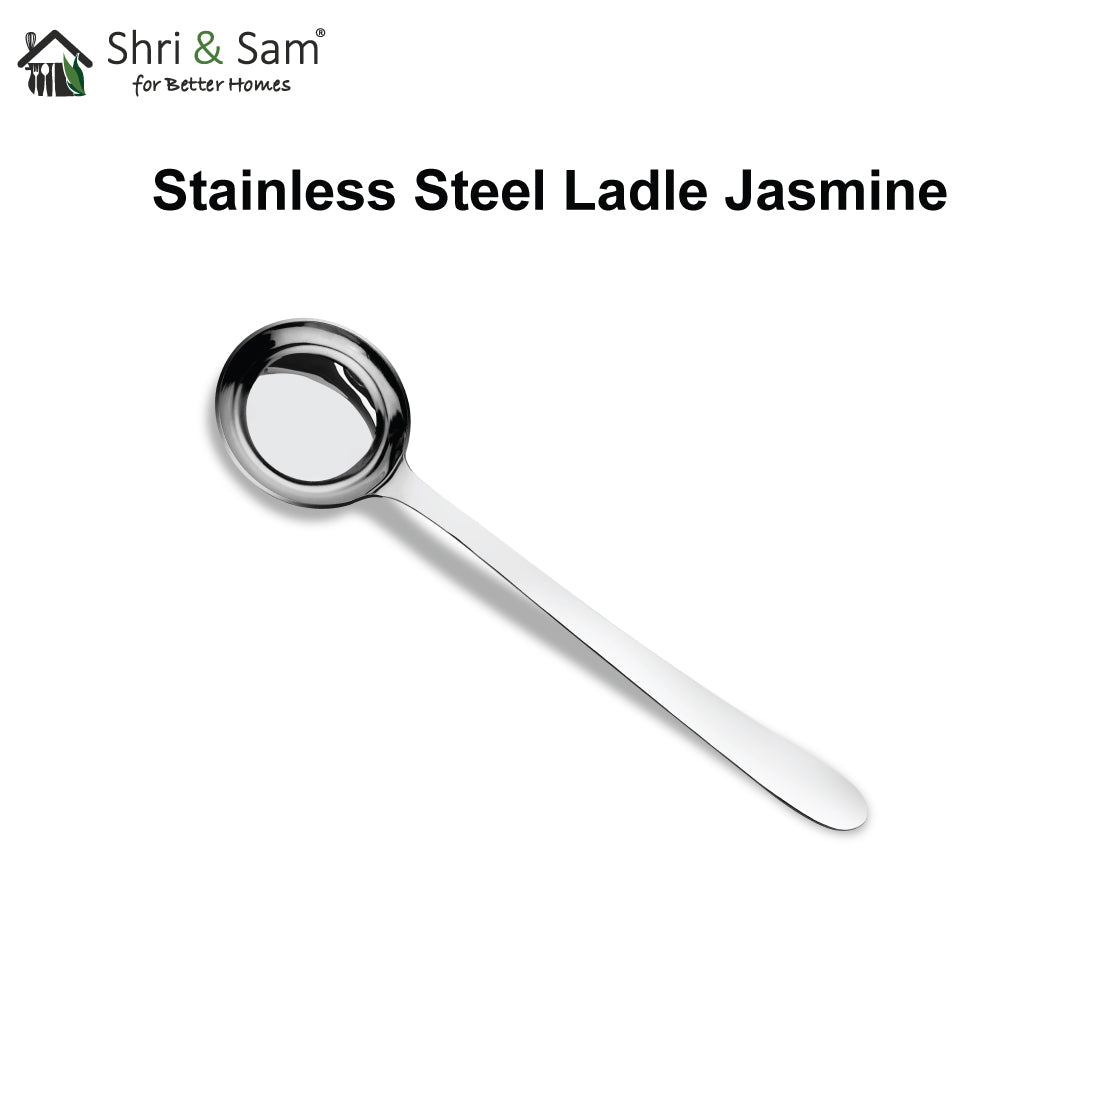 Stainless Steel Ladle Jasmine